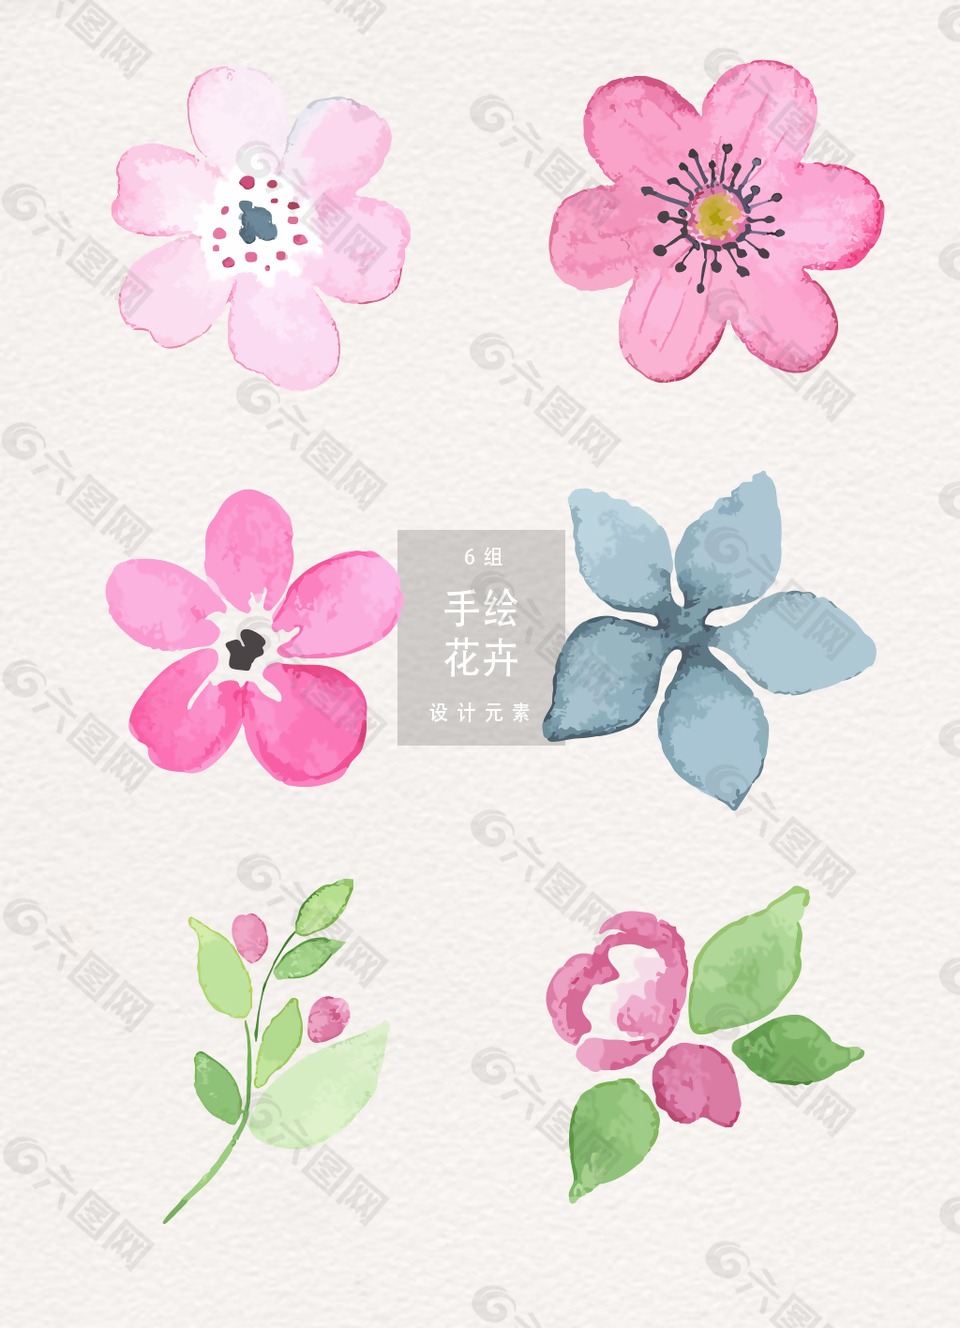 水彩手绘花卉插画素材